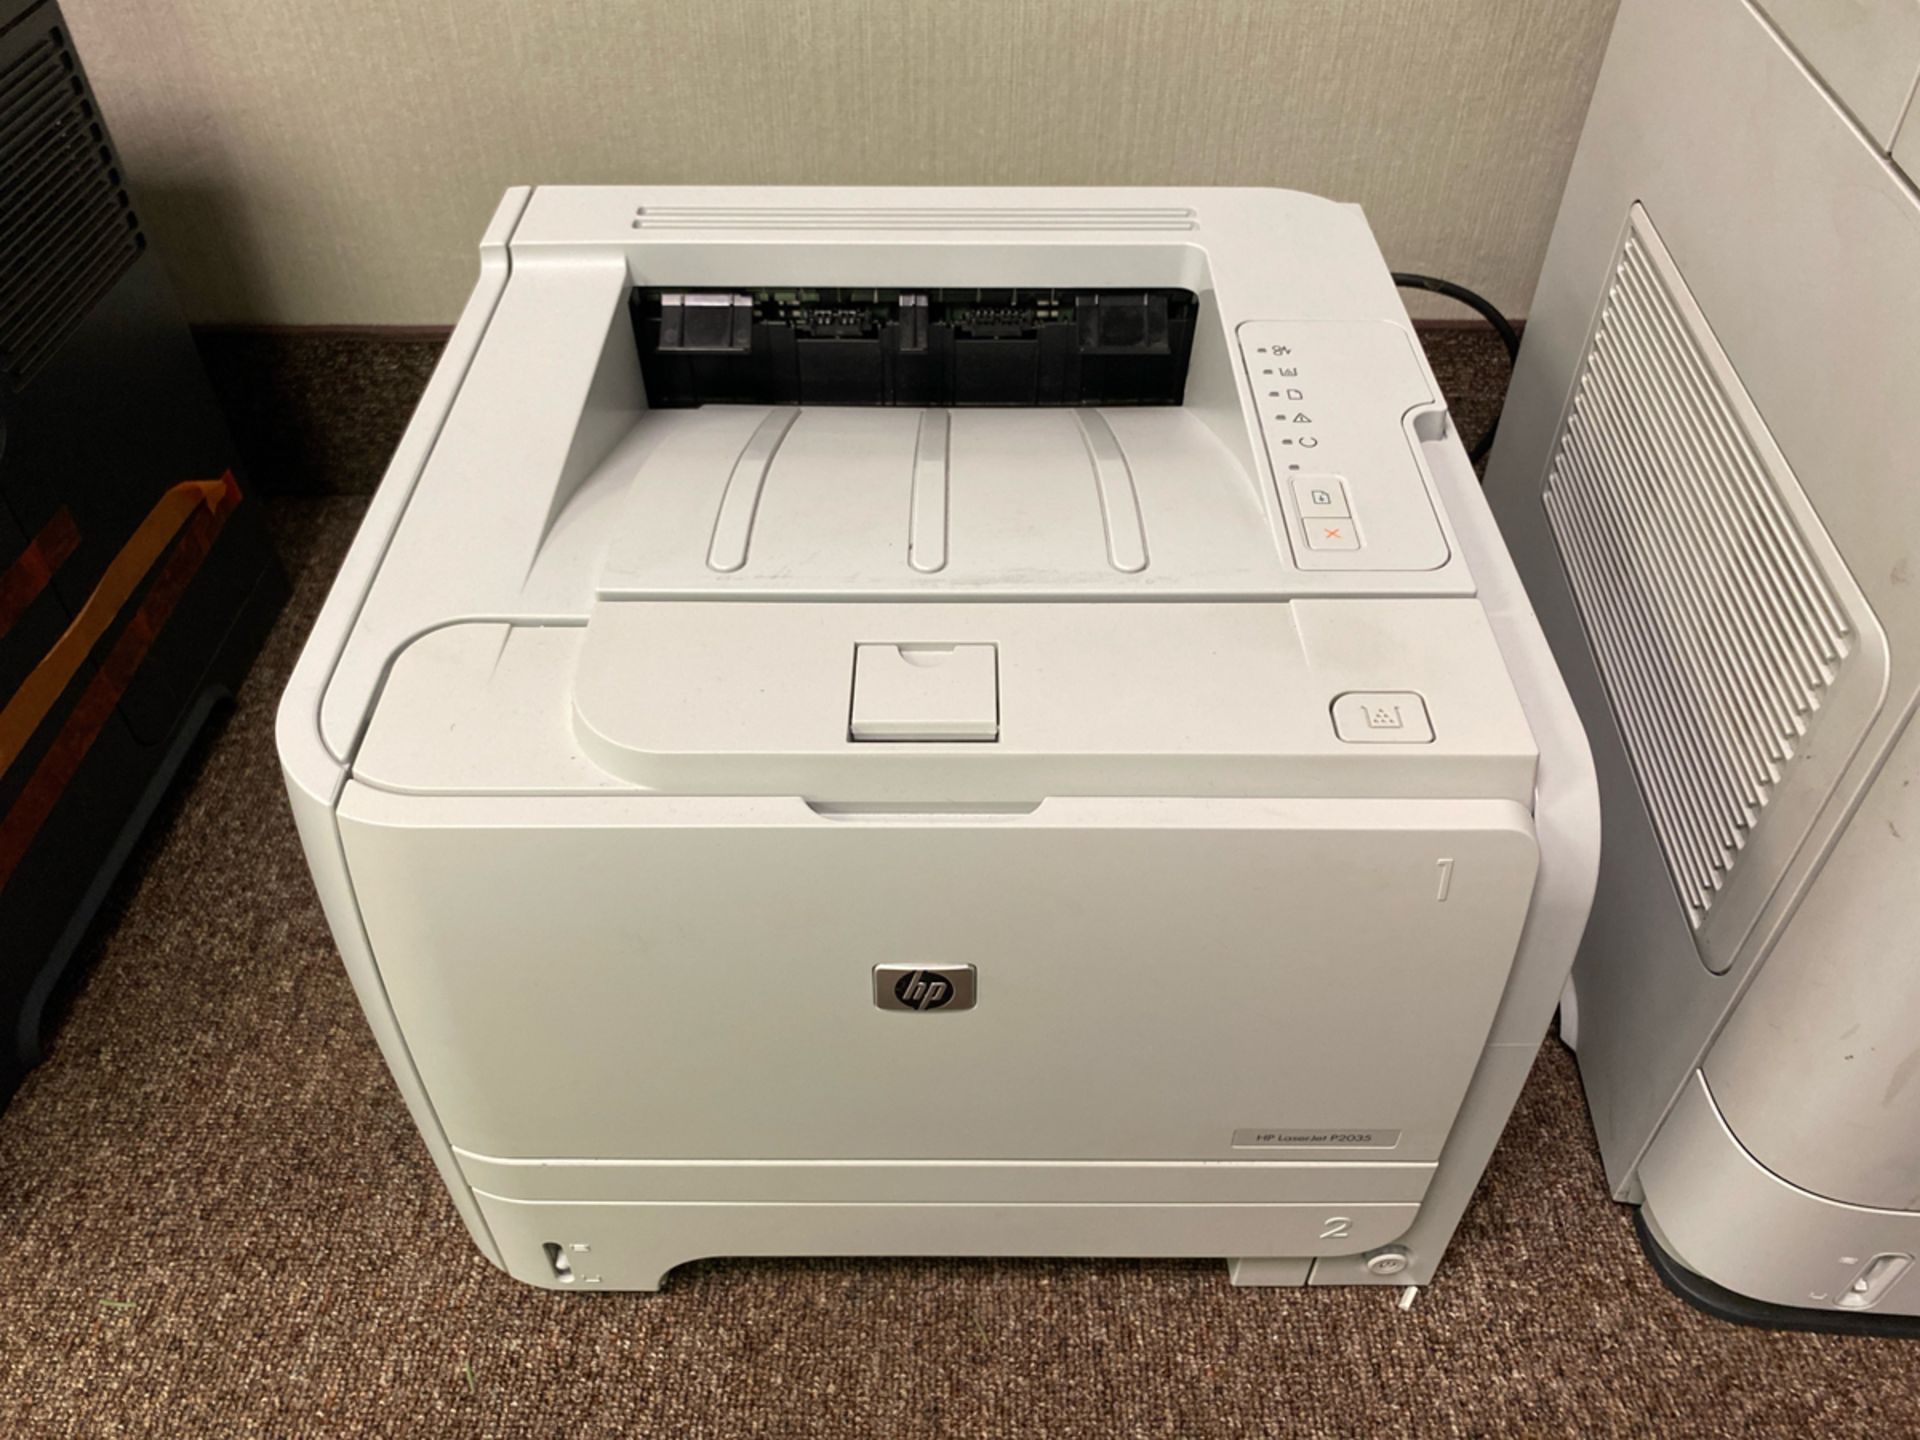 HP LaserJet P2035 Printer - Image 2 of 2